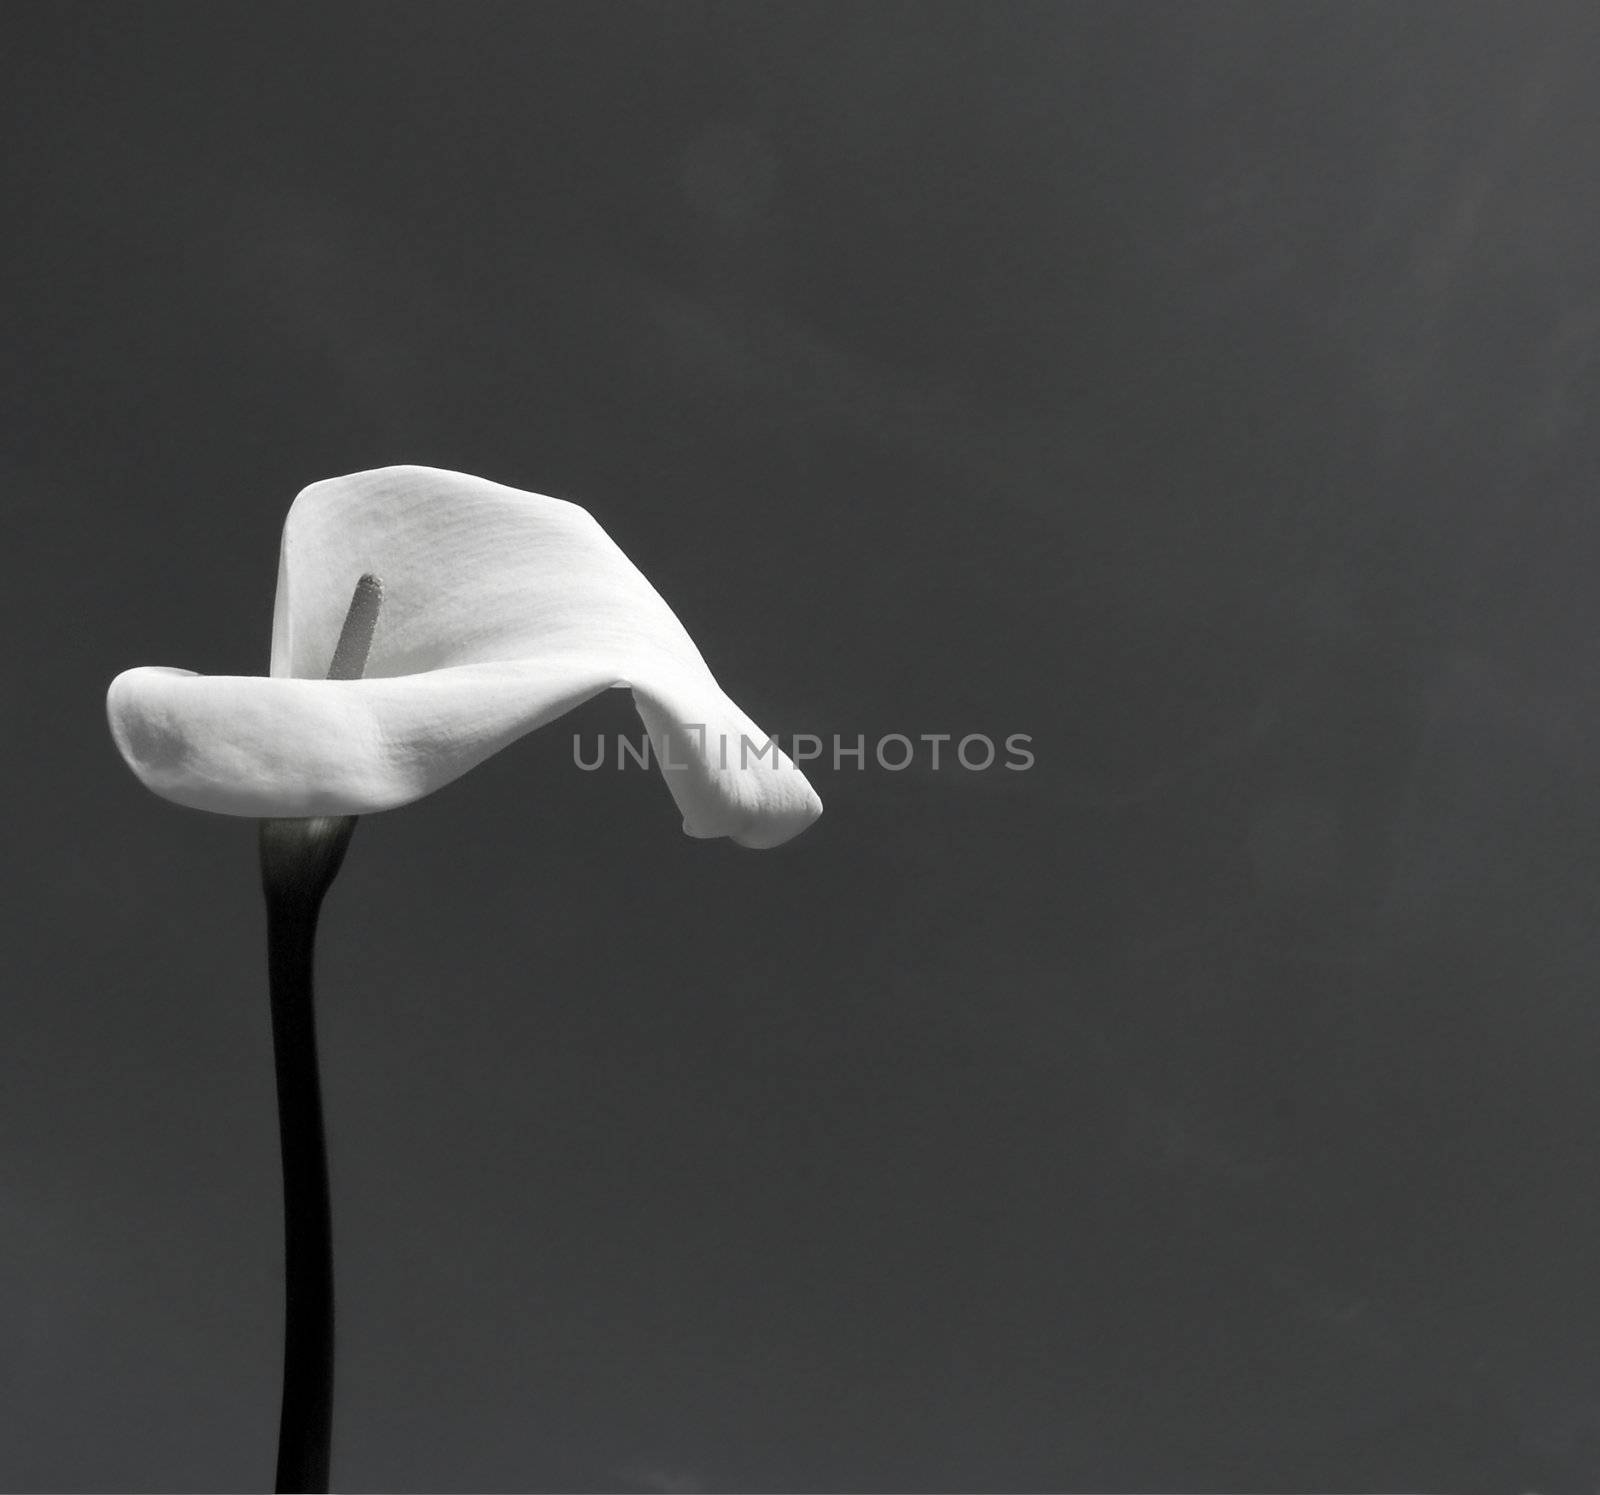 Calla (Zantedeschia aethiopica) in black and white by Carche